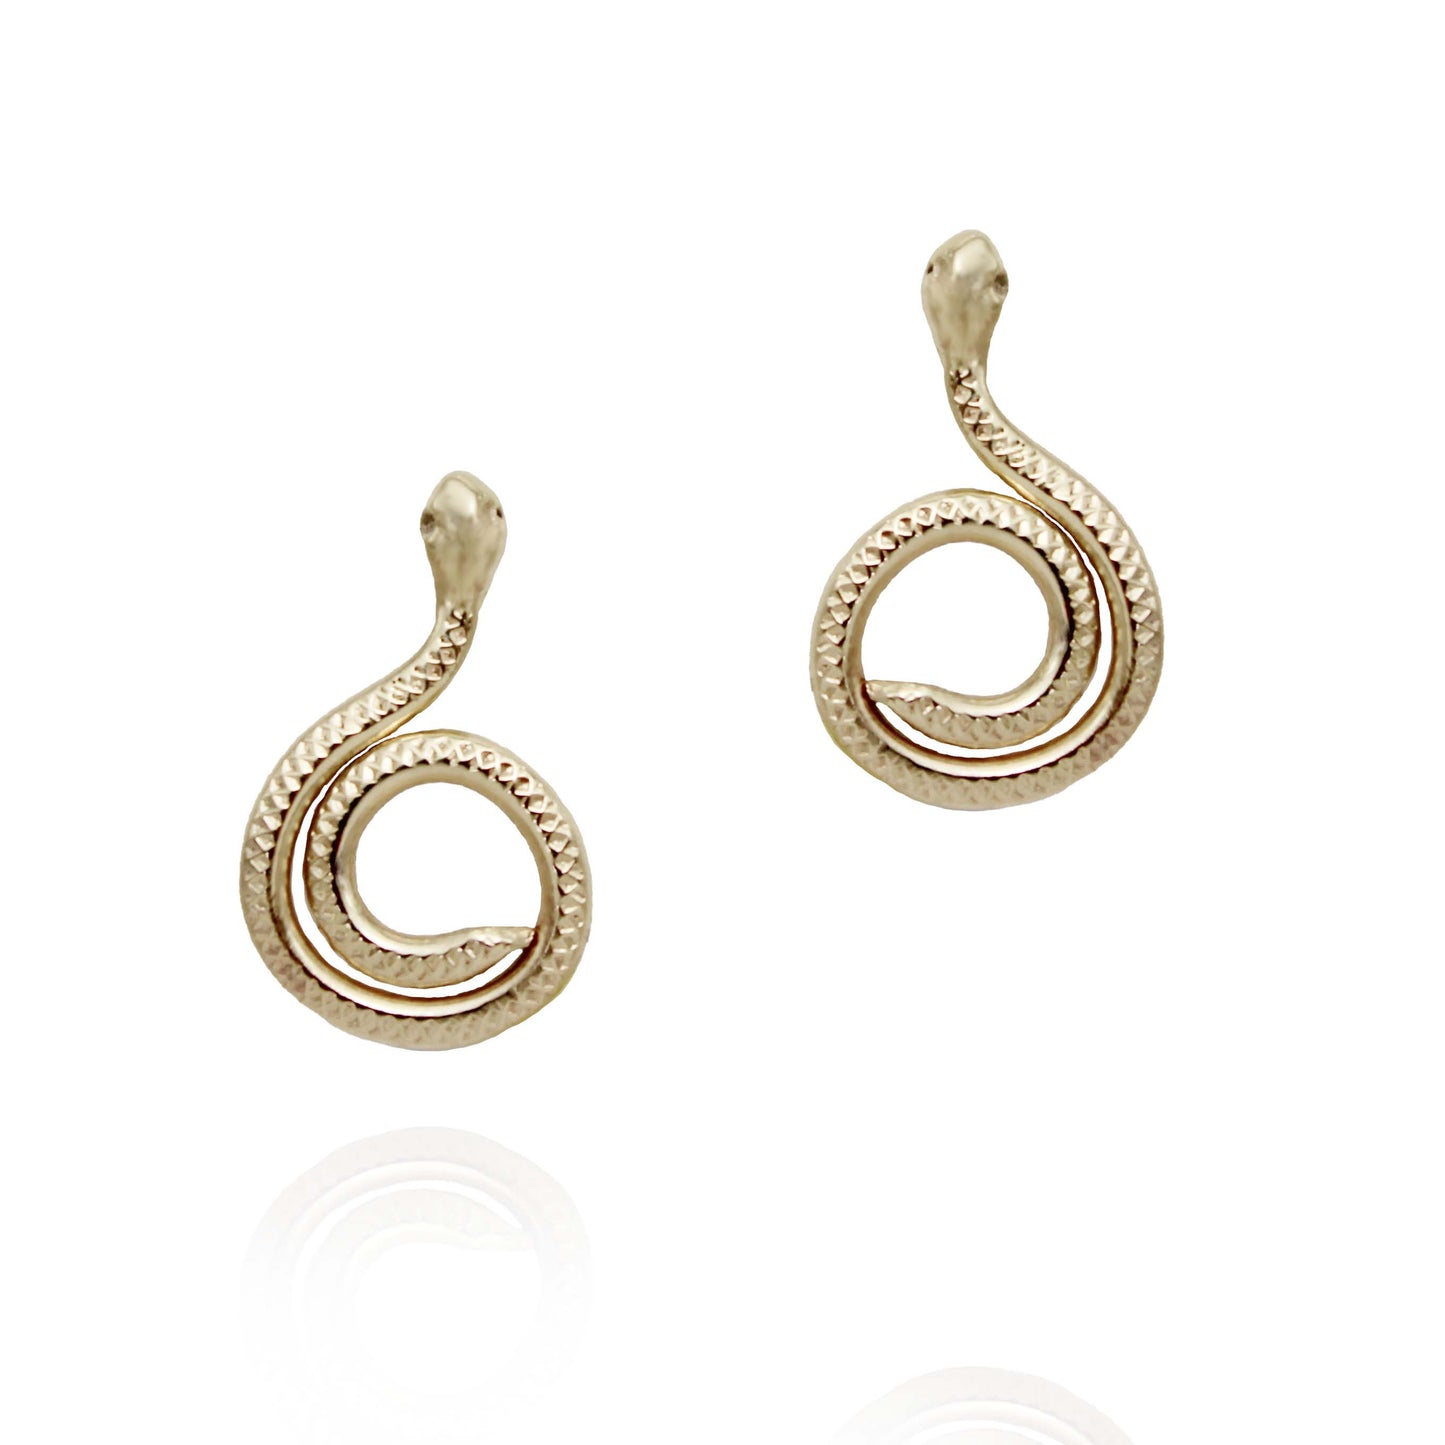 Hild Spiral Snake Earrings - Gold